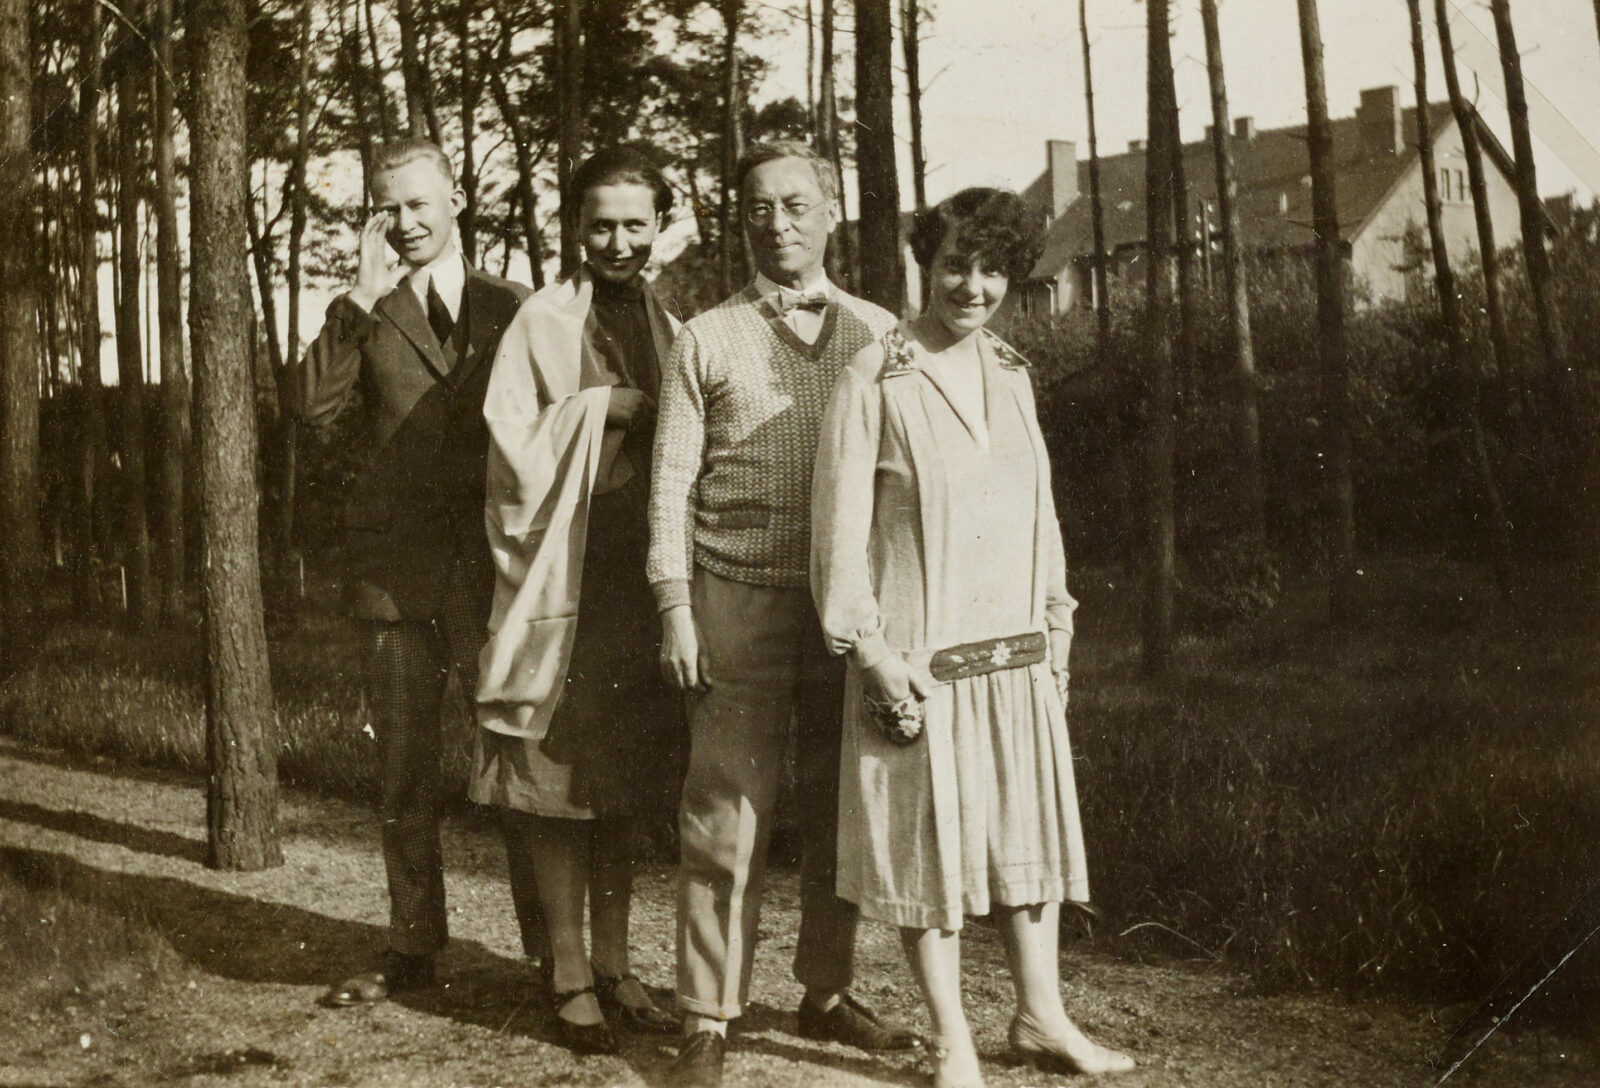 Georg und El Muche sowie Wassily und Nina Kandinsky stehen nebeneinander im Kieferbnwäldlchen und lächeln in die Kamera.